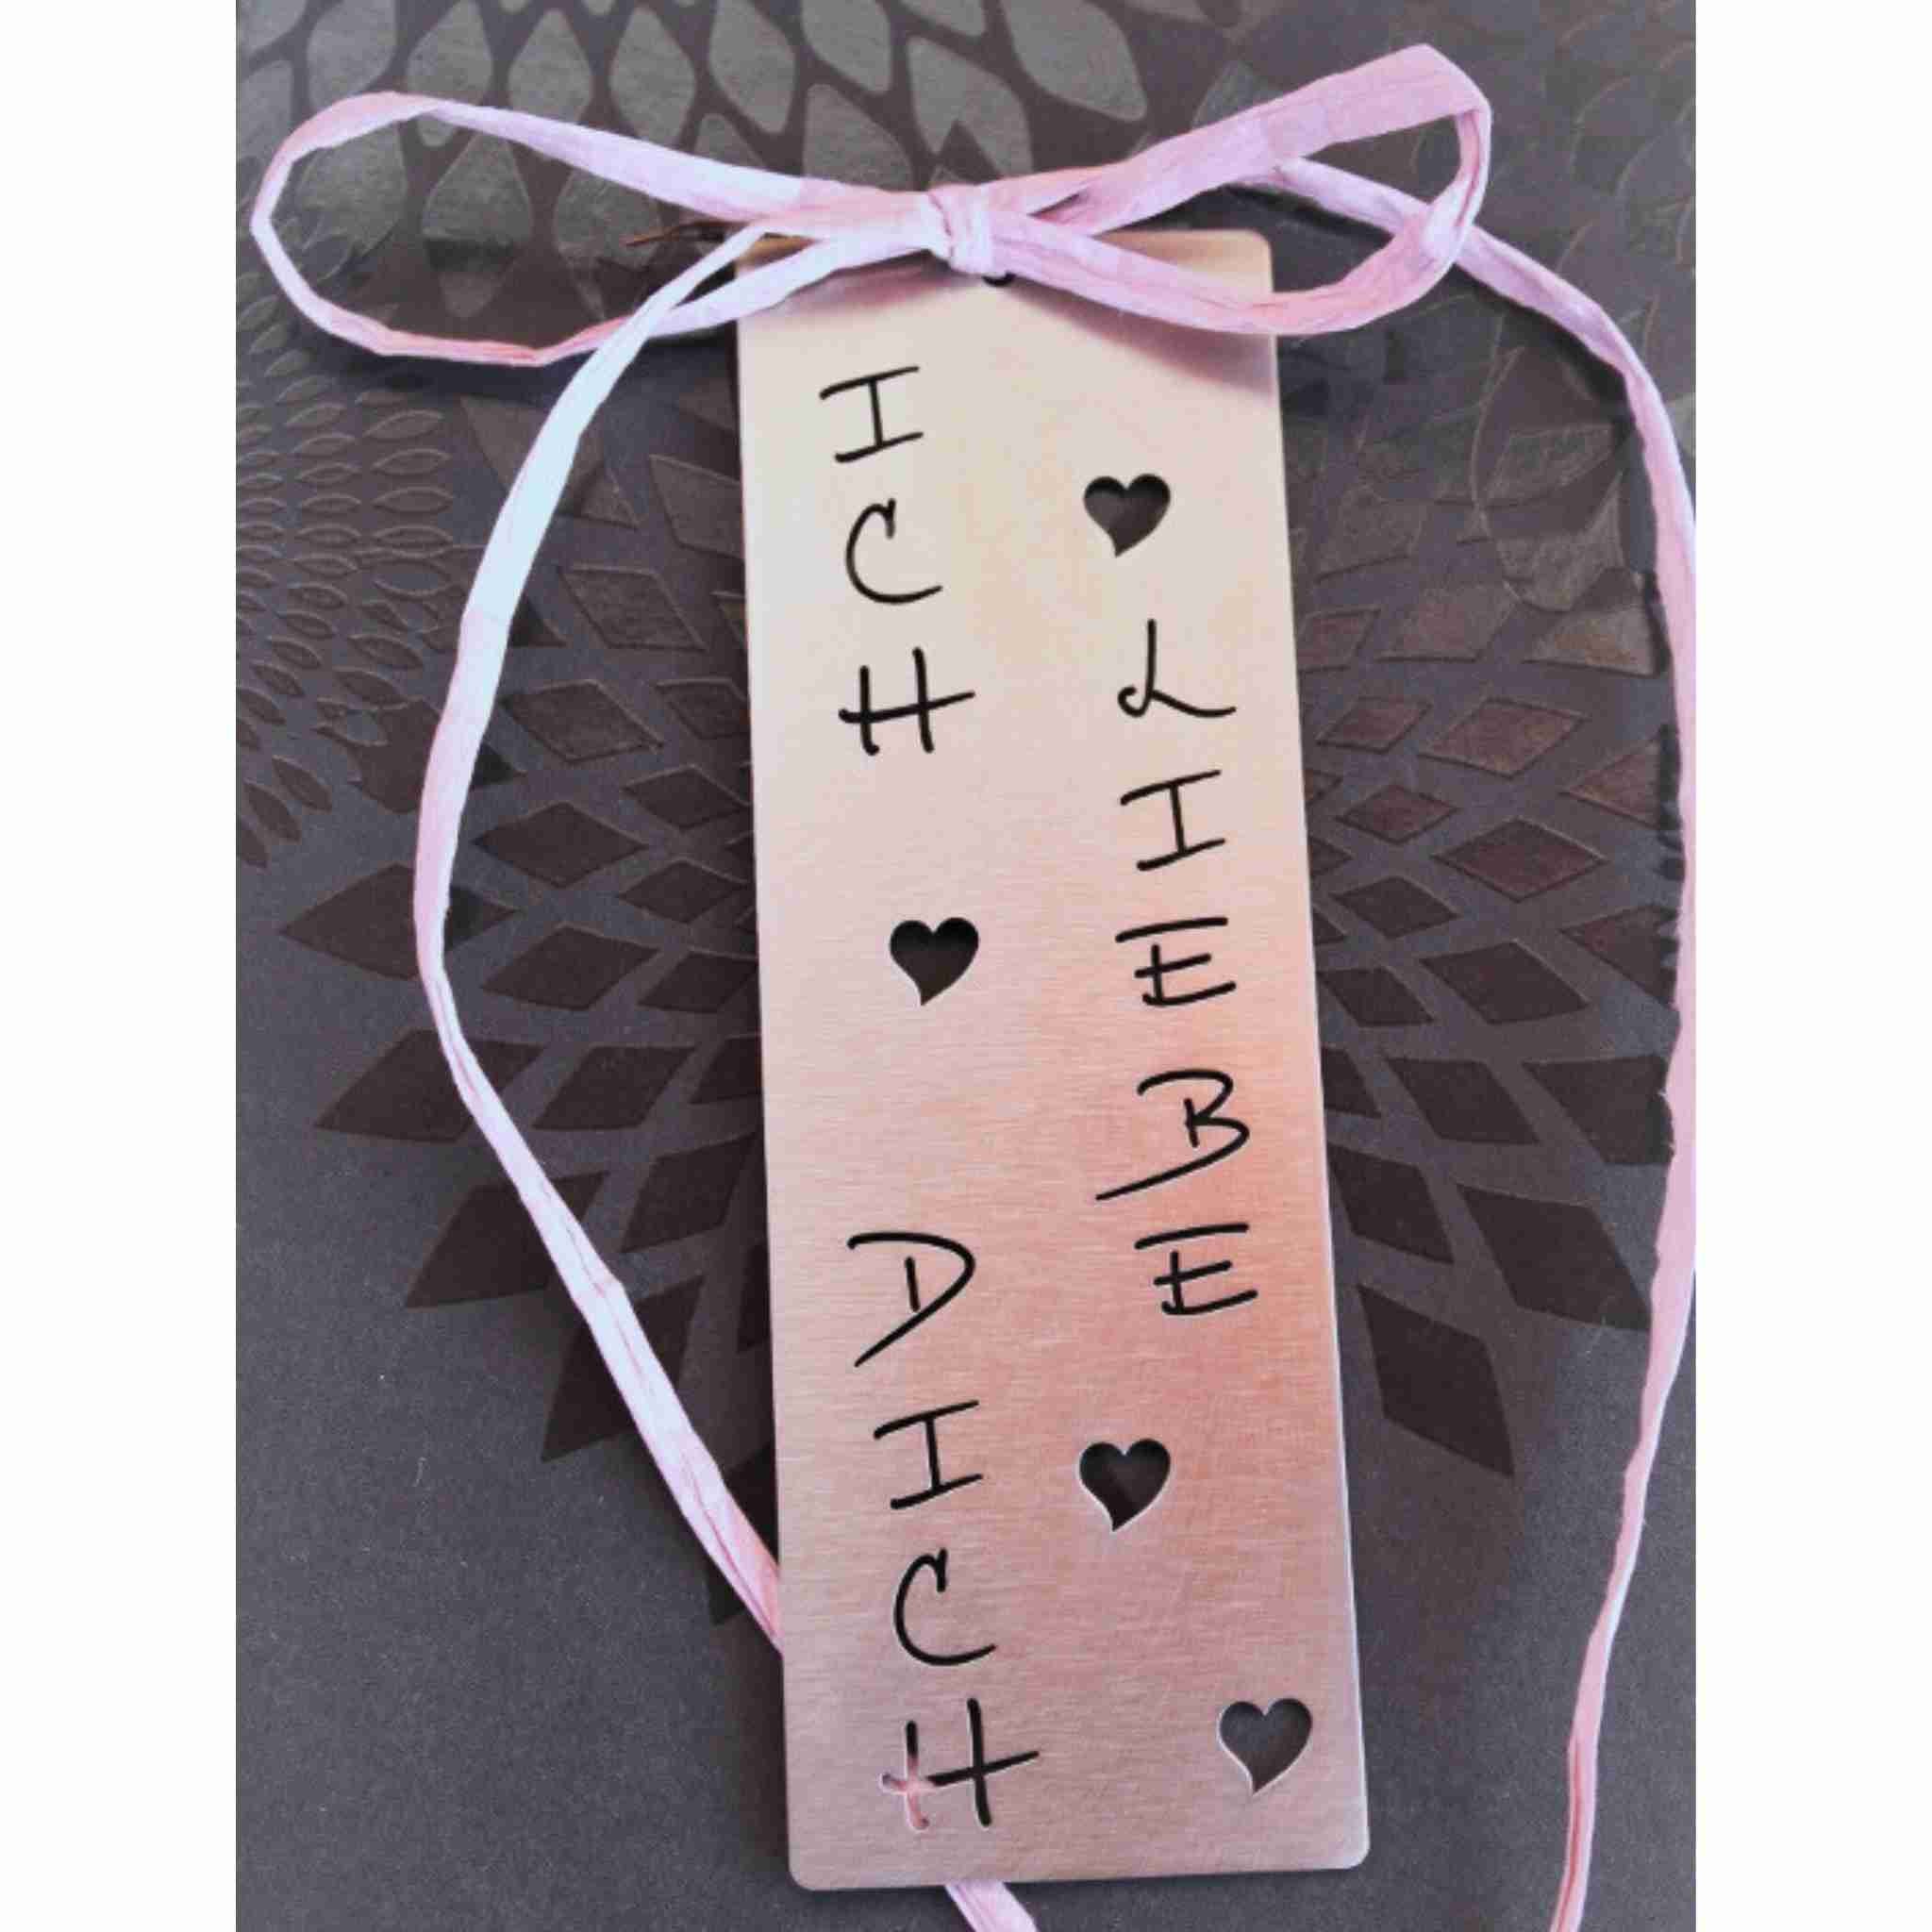 Hochwertiger Deko Anhänger mit Schriftzug "Ich liebe dich" aus Edelstahl als besondere Geschenkidee für Ihren Lieblingsmenschen